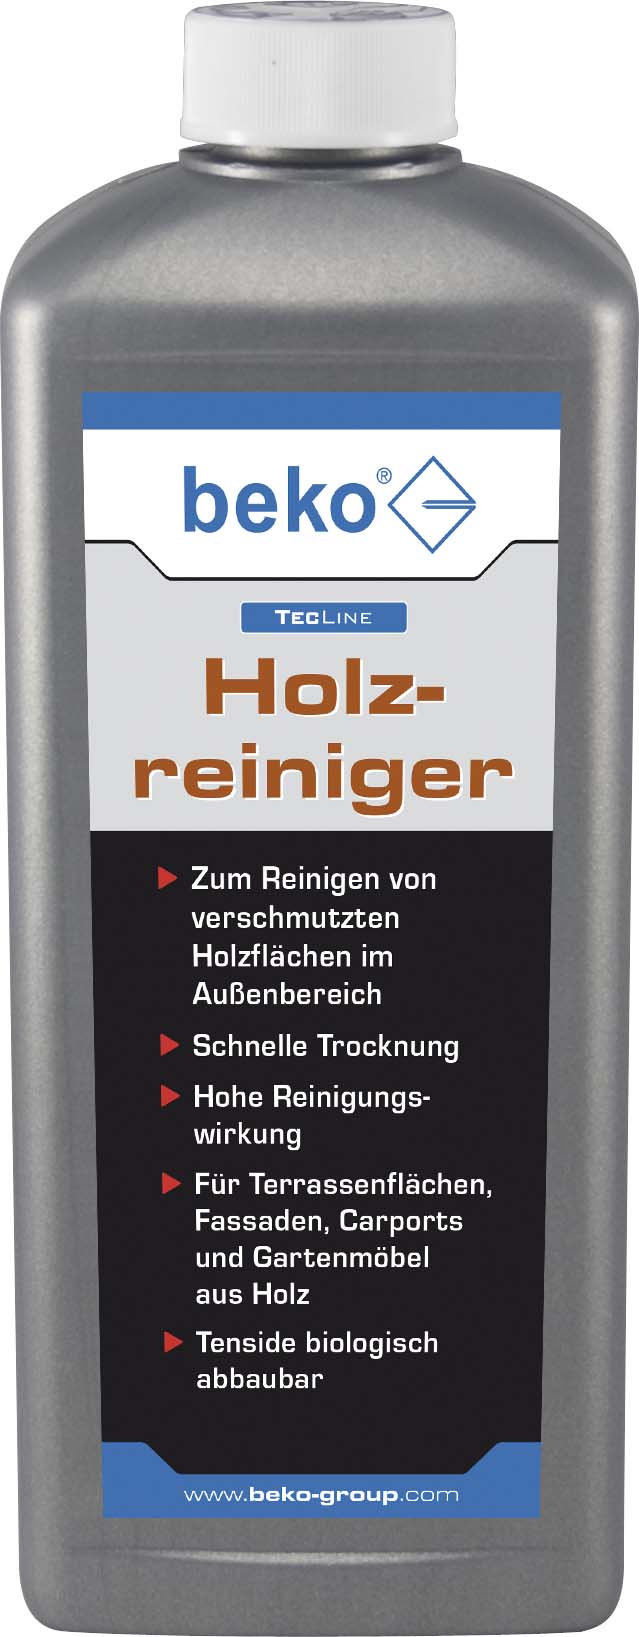 Beko TecLine Holzreiniger 1000ml 299 18 1000 - 299181000